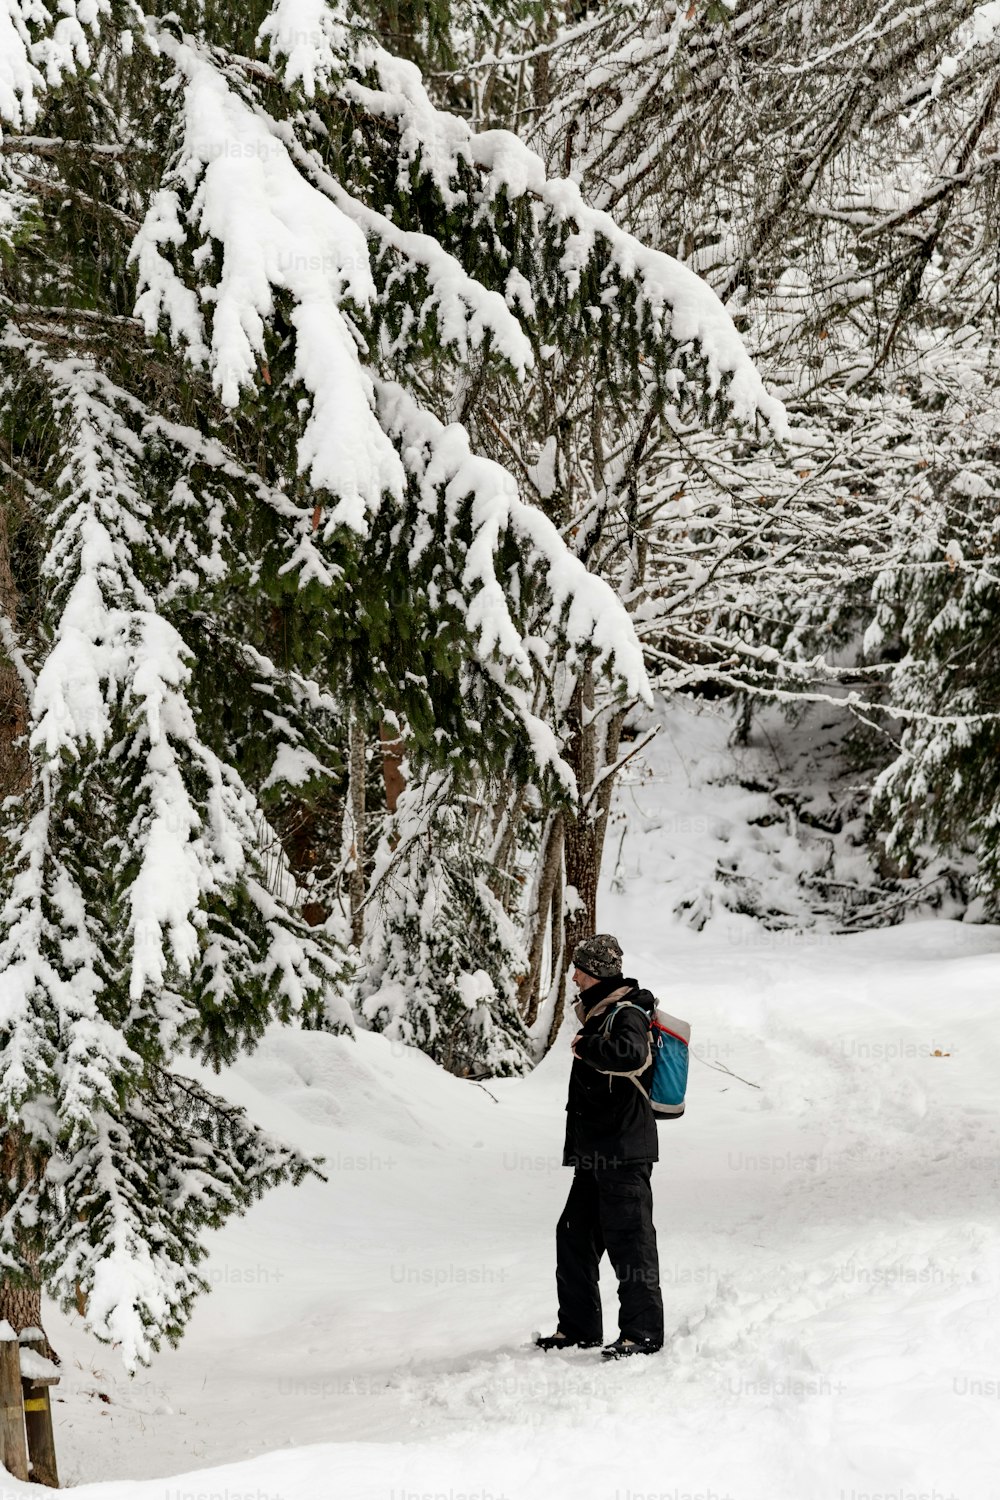 Una persona caminando en la nieve cargando una mochila